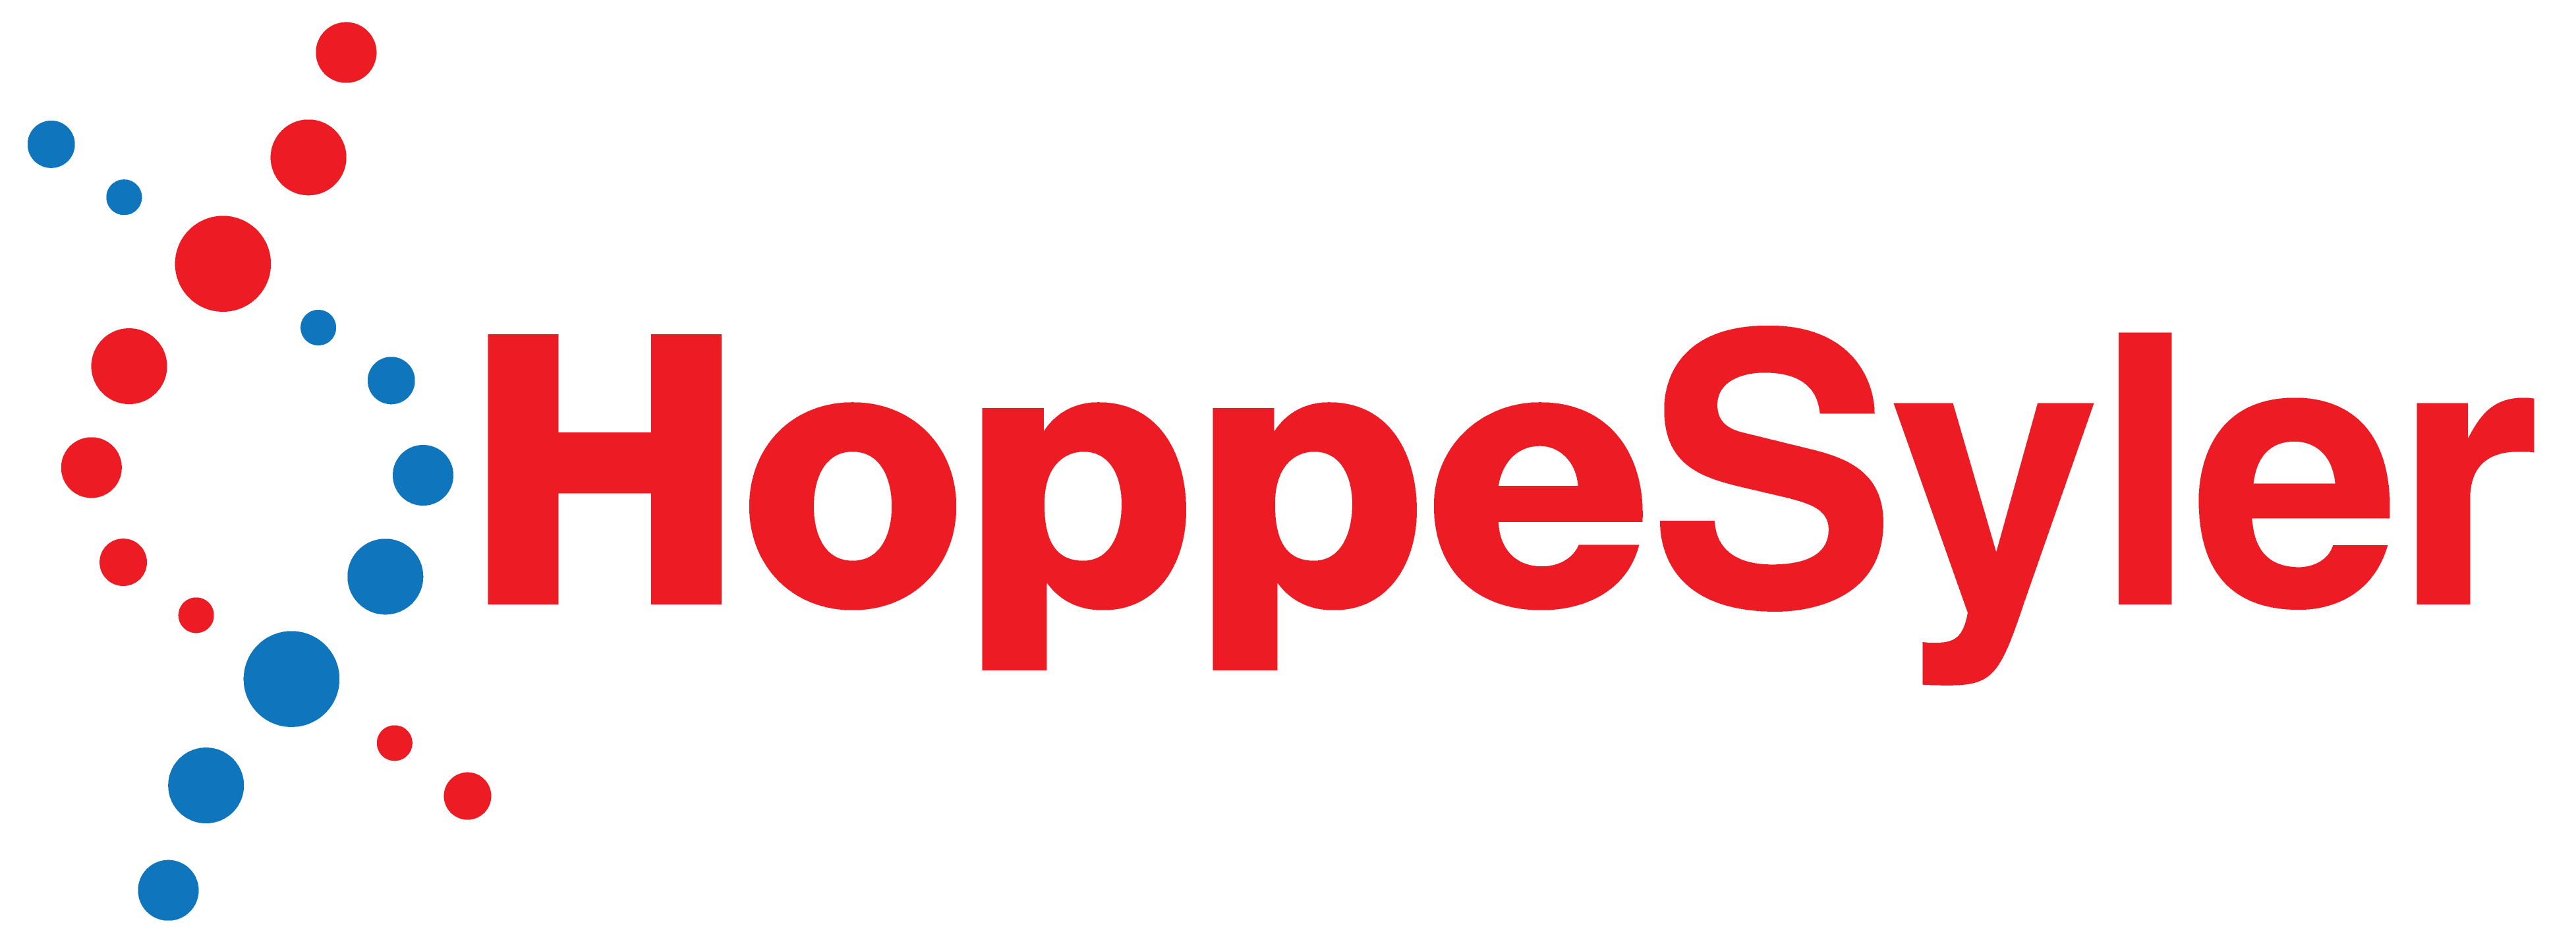 HoppeSyler logo